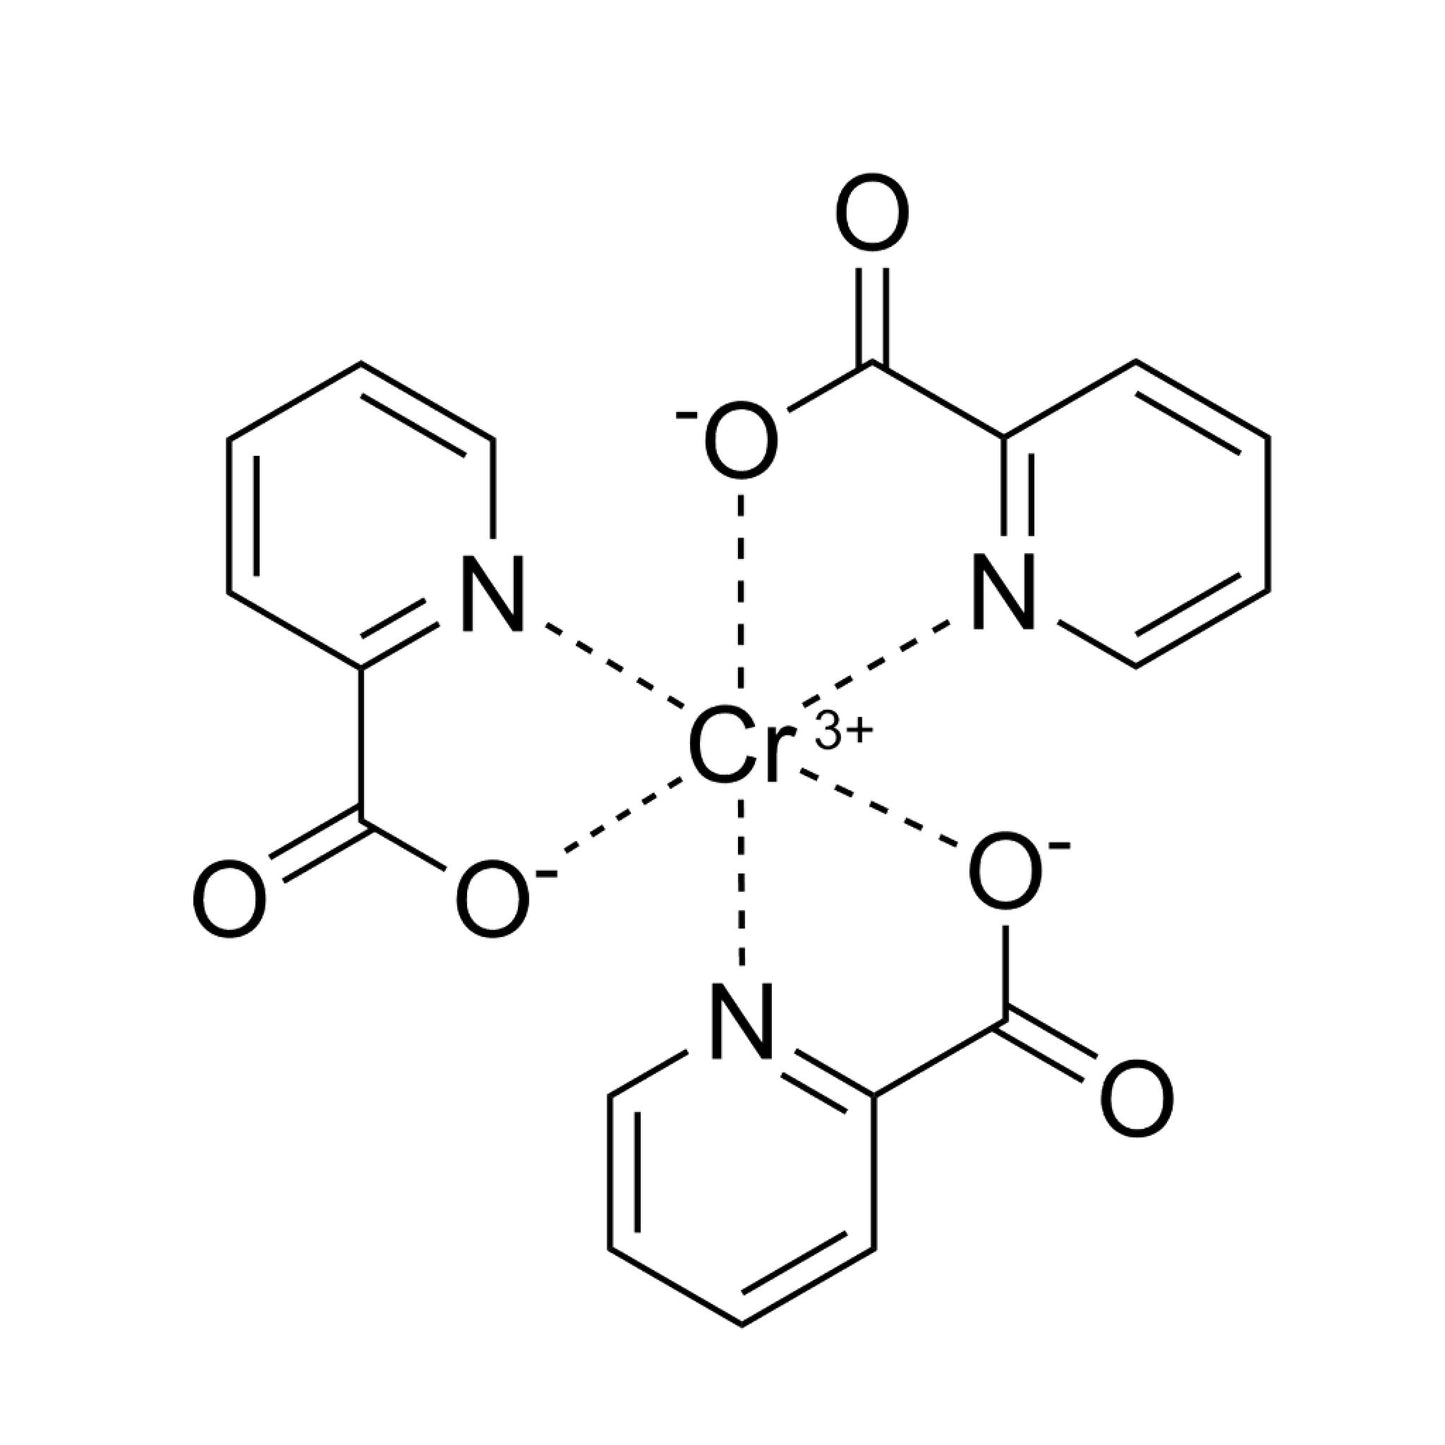 2 Chromium Picolinate - Maximum Daily Dosage 200 mcg- Two Ingredients